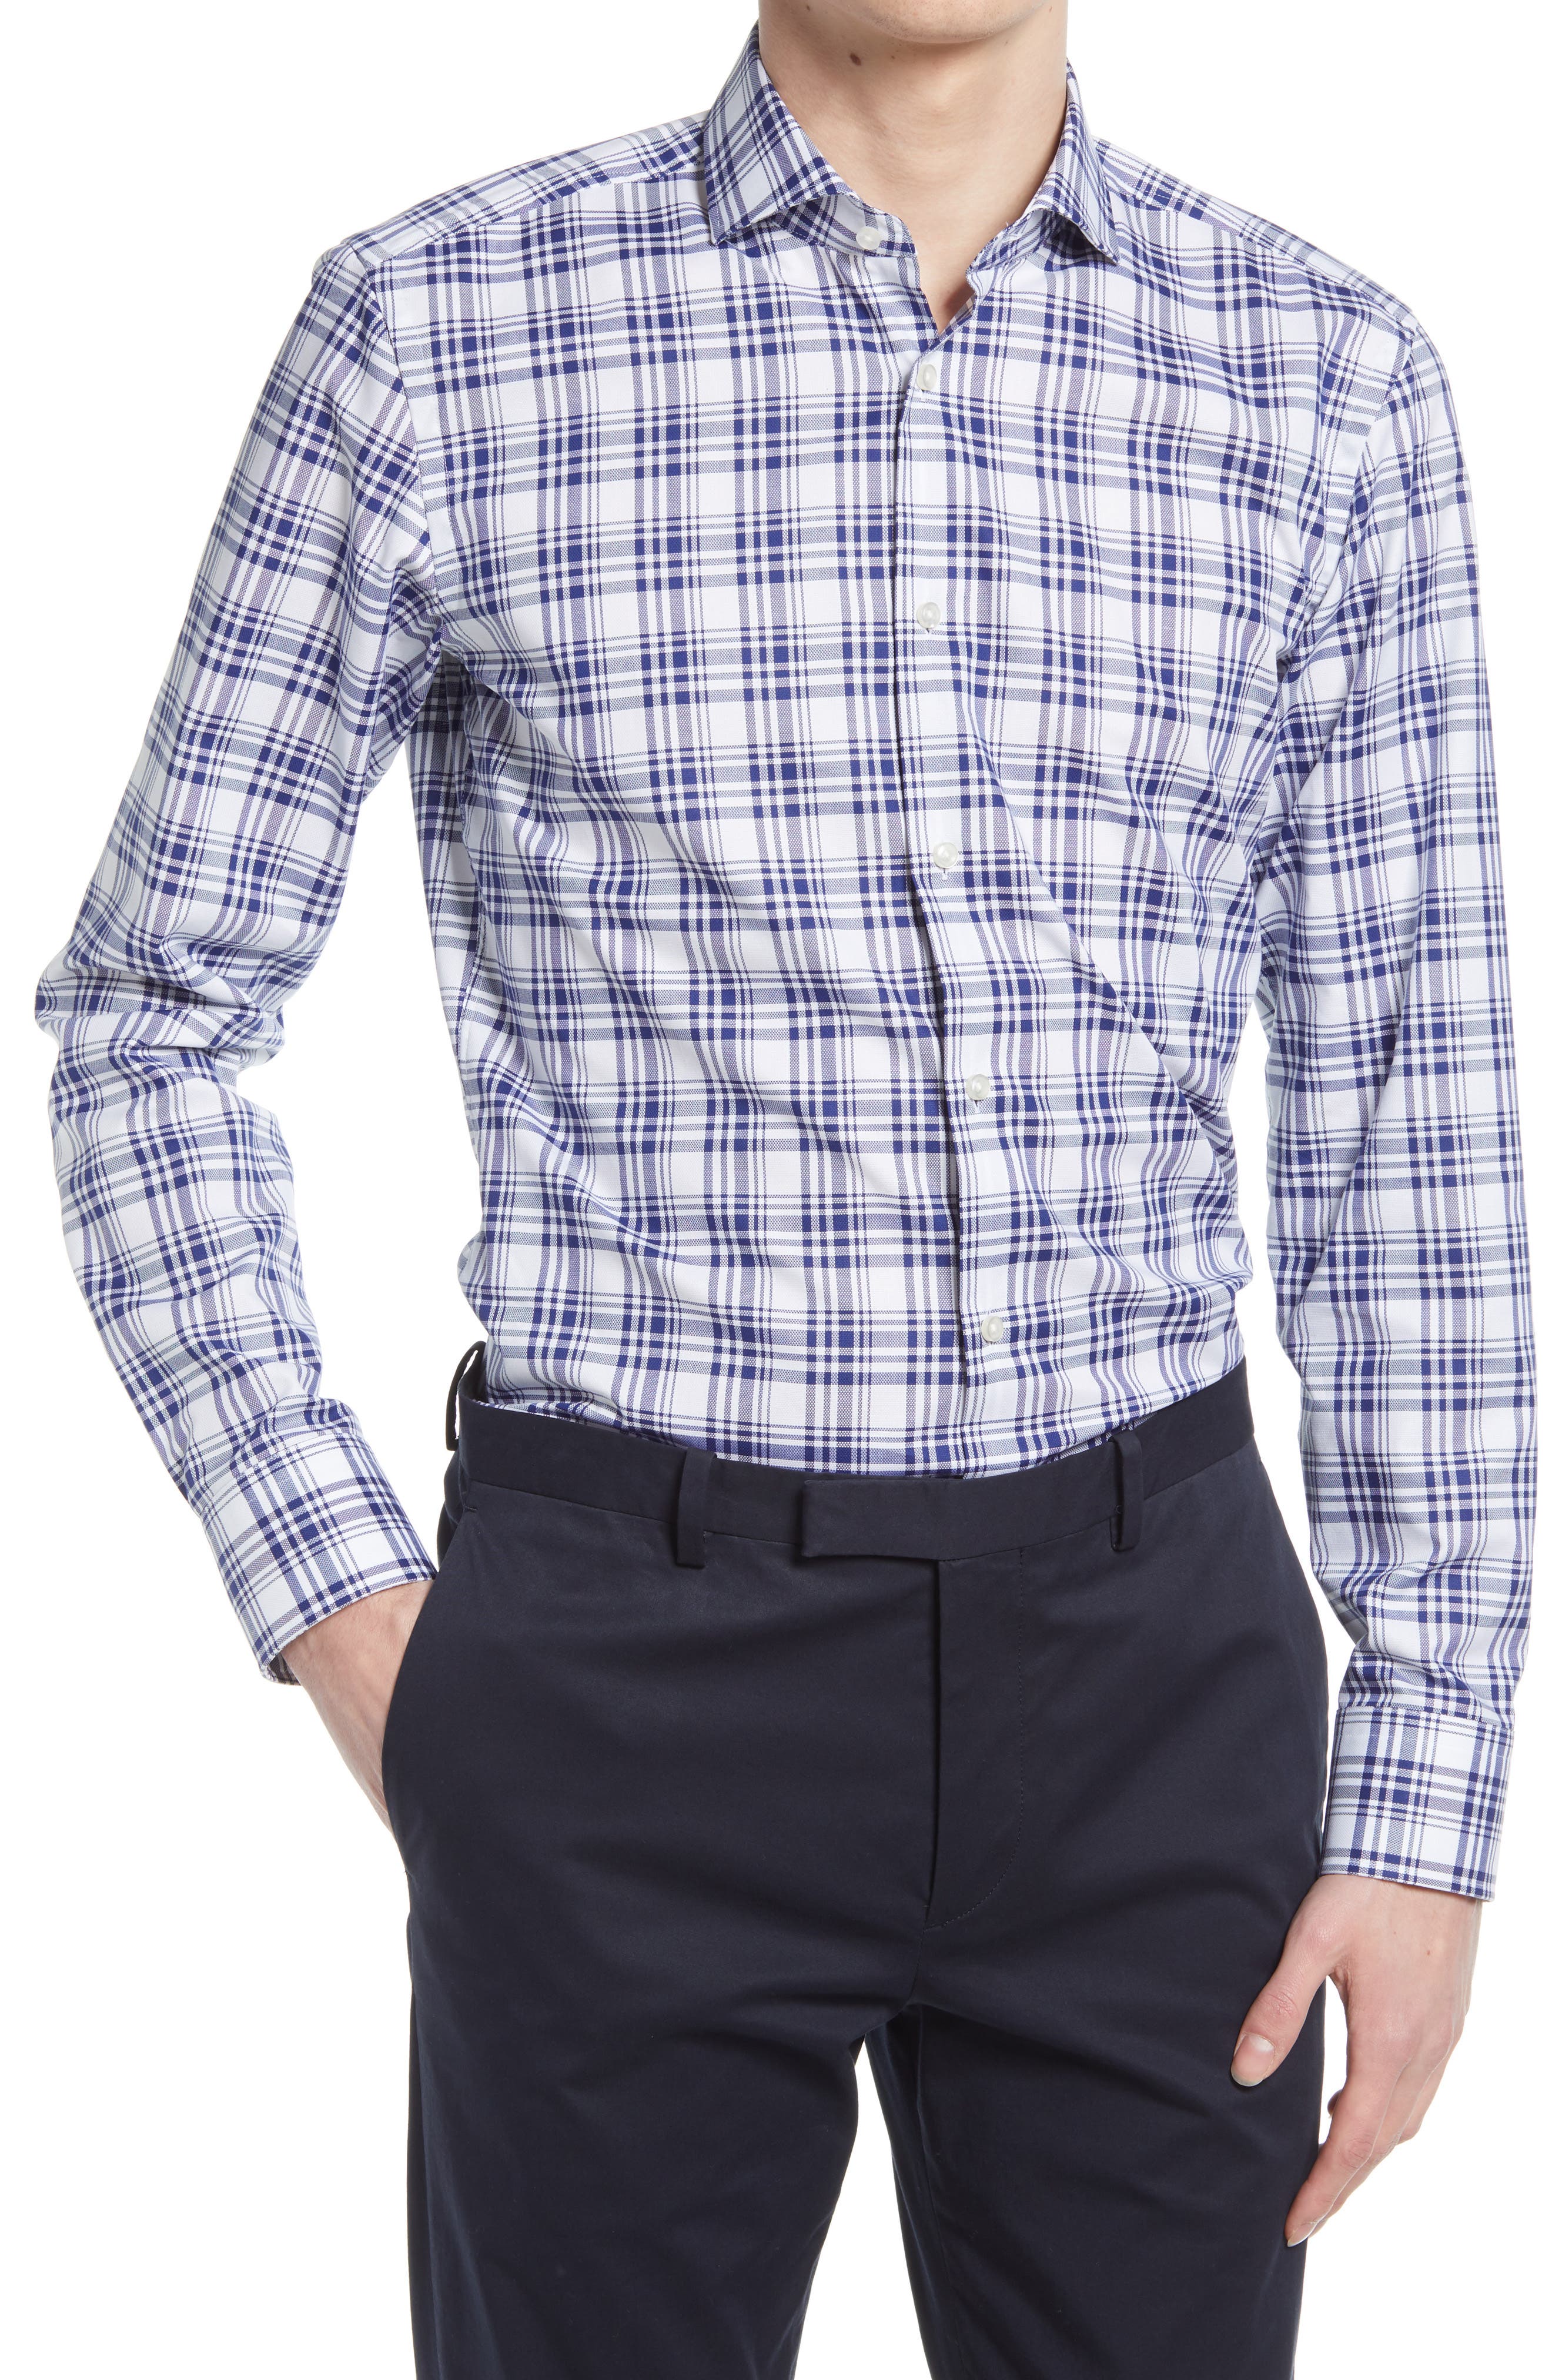 Hugo Boss Men's "Jason" Slim Fit Plaid Long Sleeve Dress Shirt Sz 15 17 17.5 18 